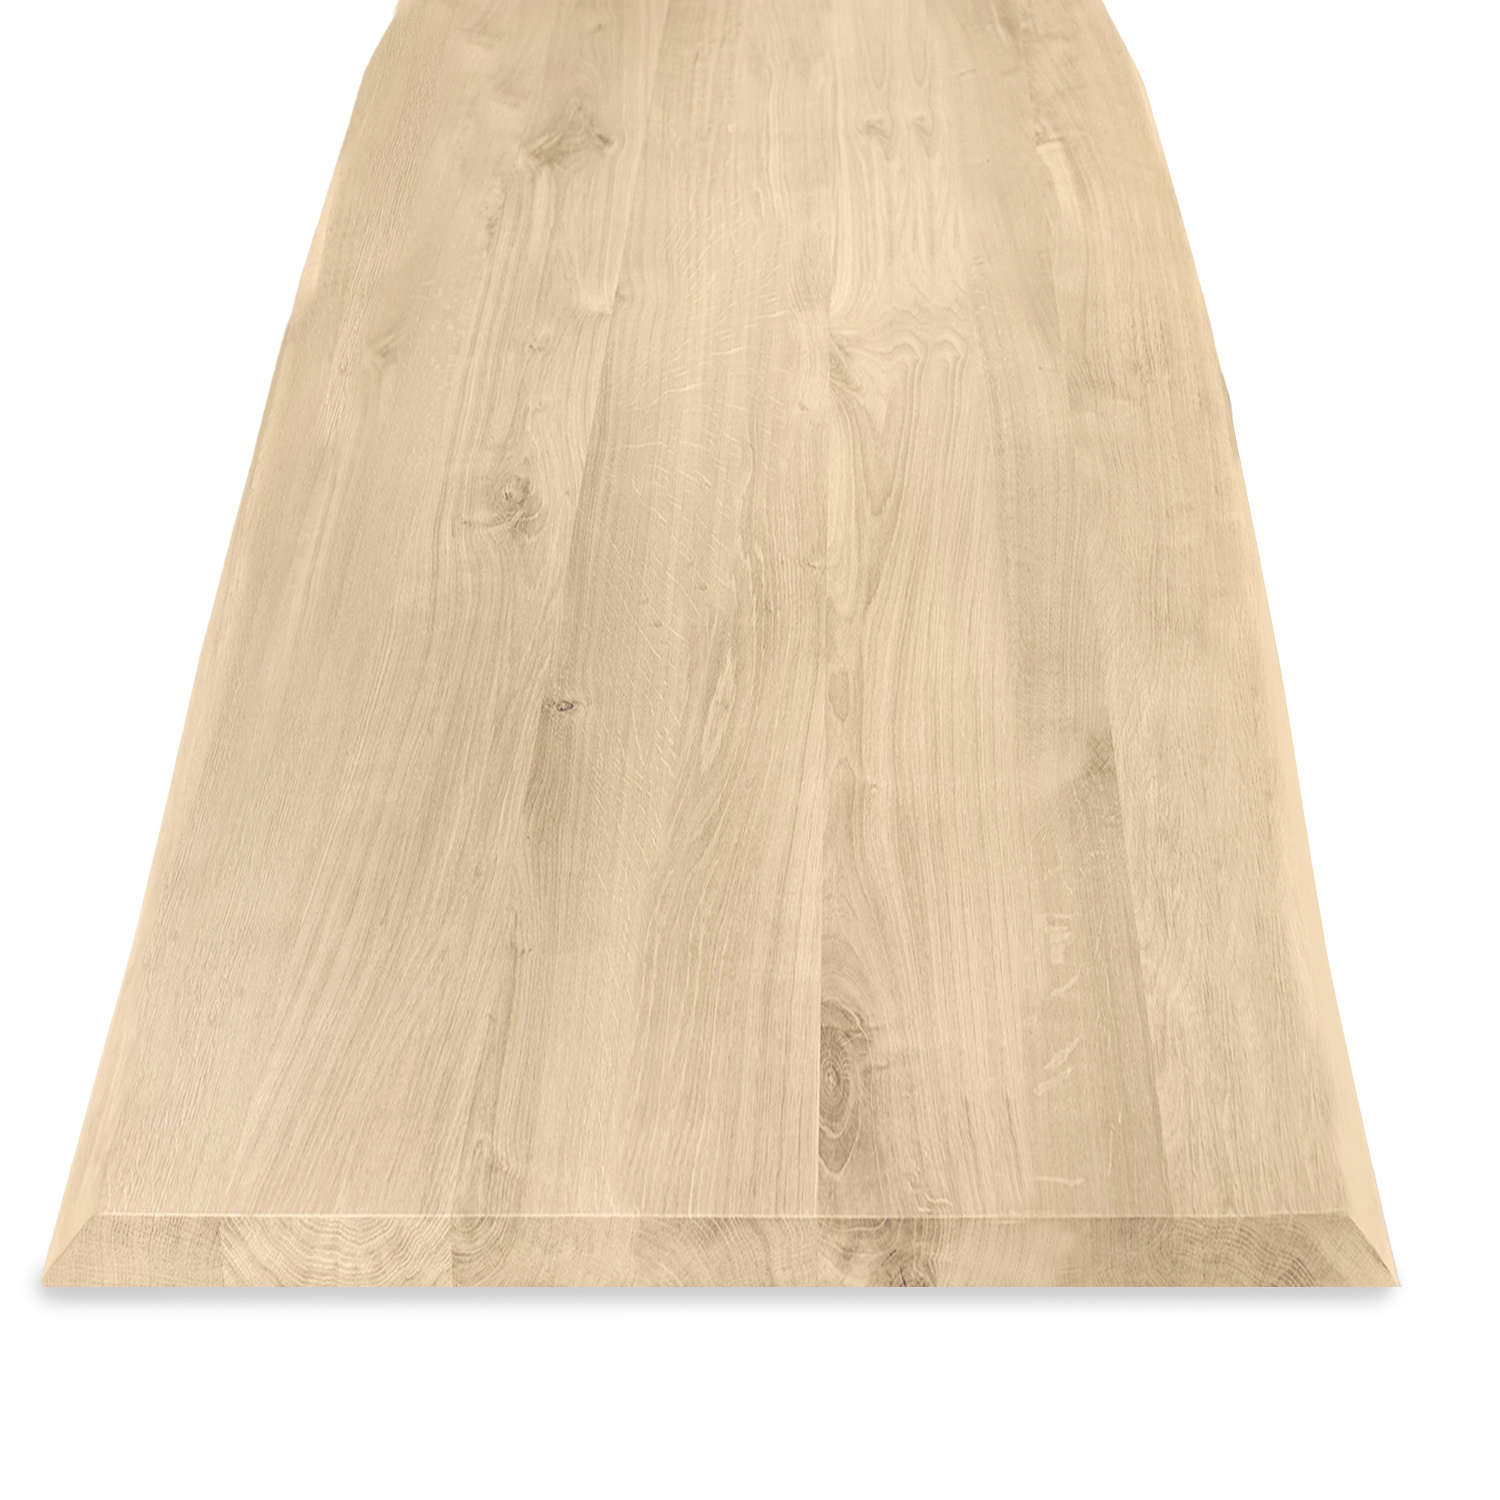  Tischplatte Eiche - mit Baumkante (Optik)  - nach Maß - 4 cm dick (1-Schicht) - Breite Lamellen (10 - 12 cm breit) - Eichenholz rustikal - verleimt & künstlich getrocknet (HF 8-12%) - 50-120x50-248 cm